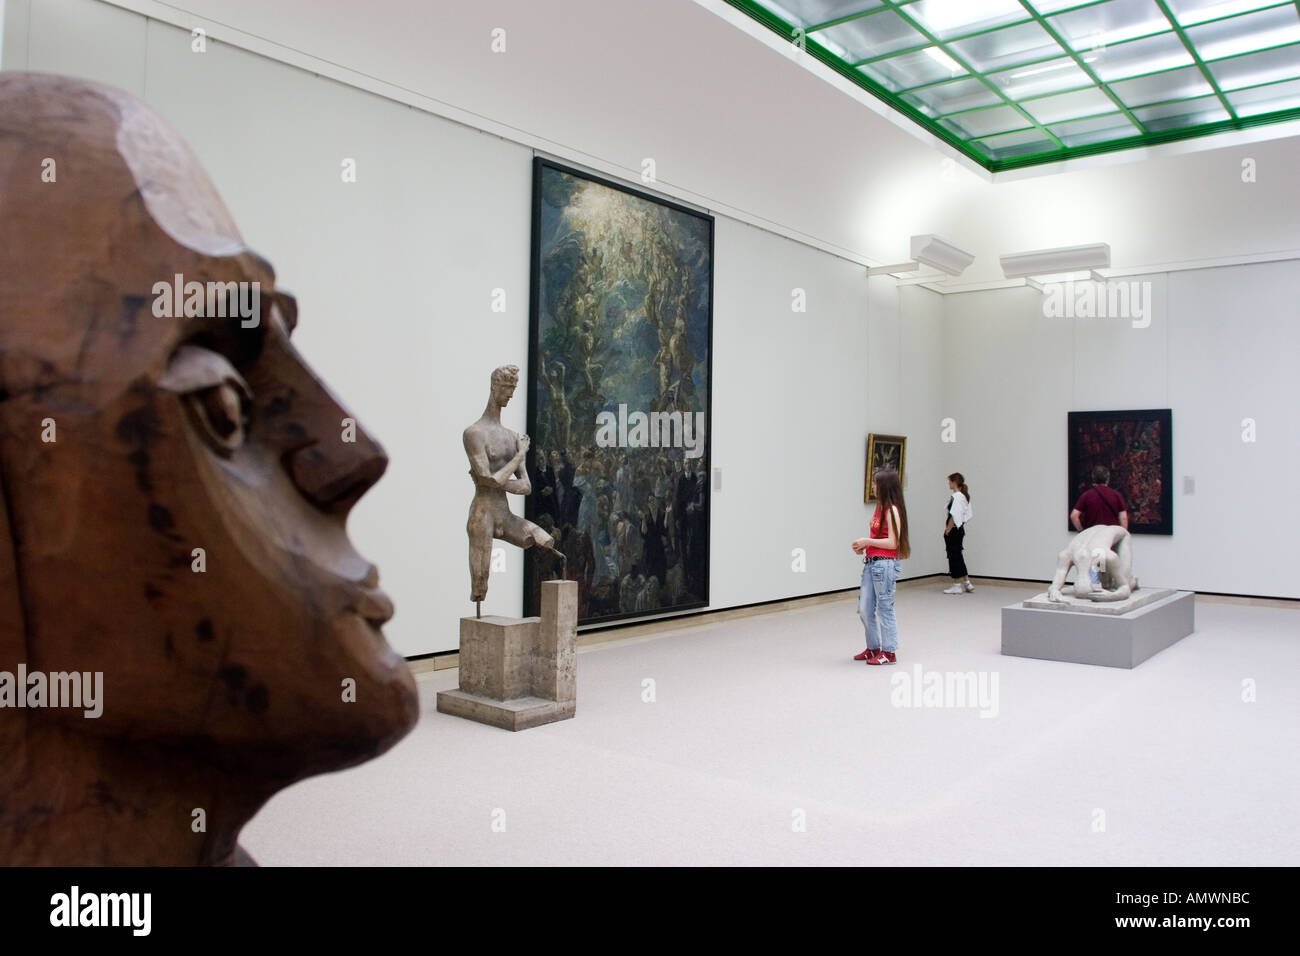 Germania Stoccarda mostra d'Arte presso la Staatsgalerie Staatsgalerie museo progettato dallo scultore e architetto James Stirling Foto Stock